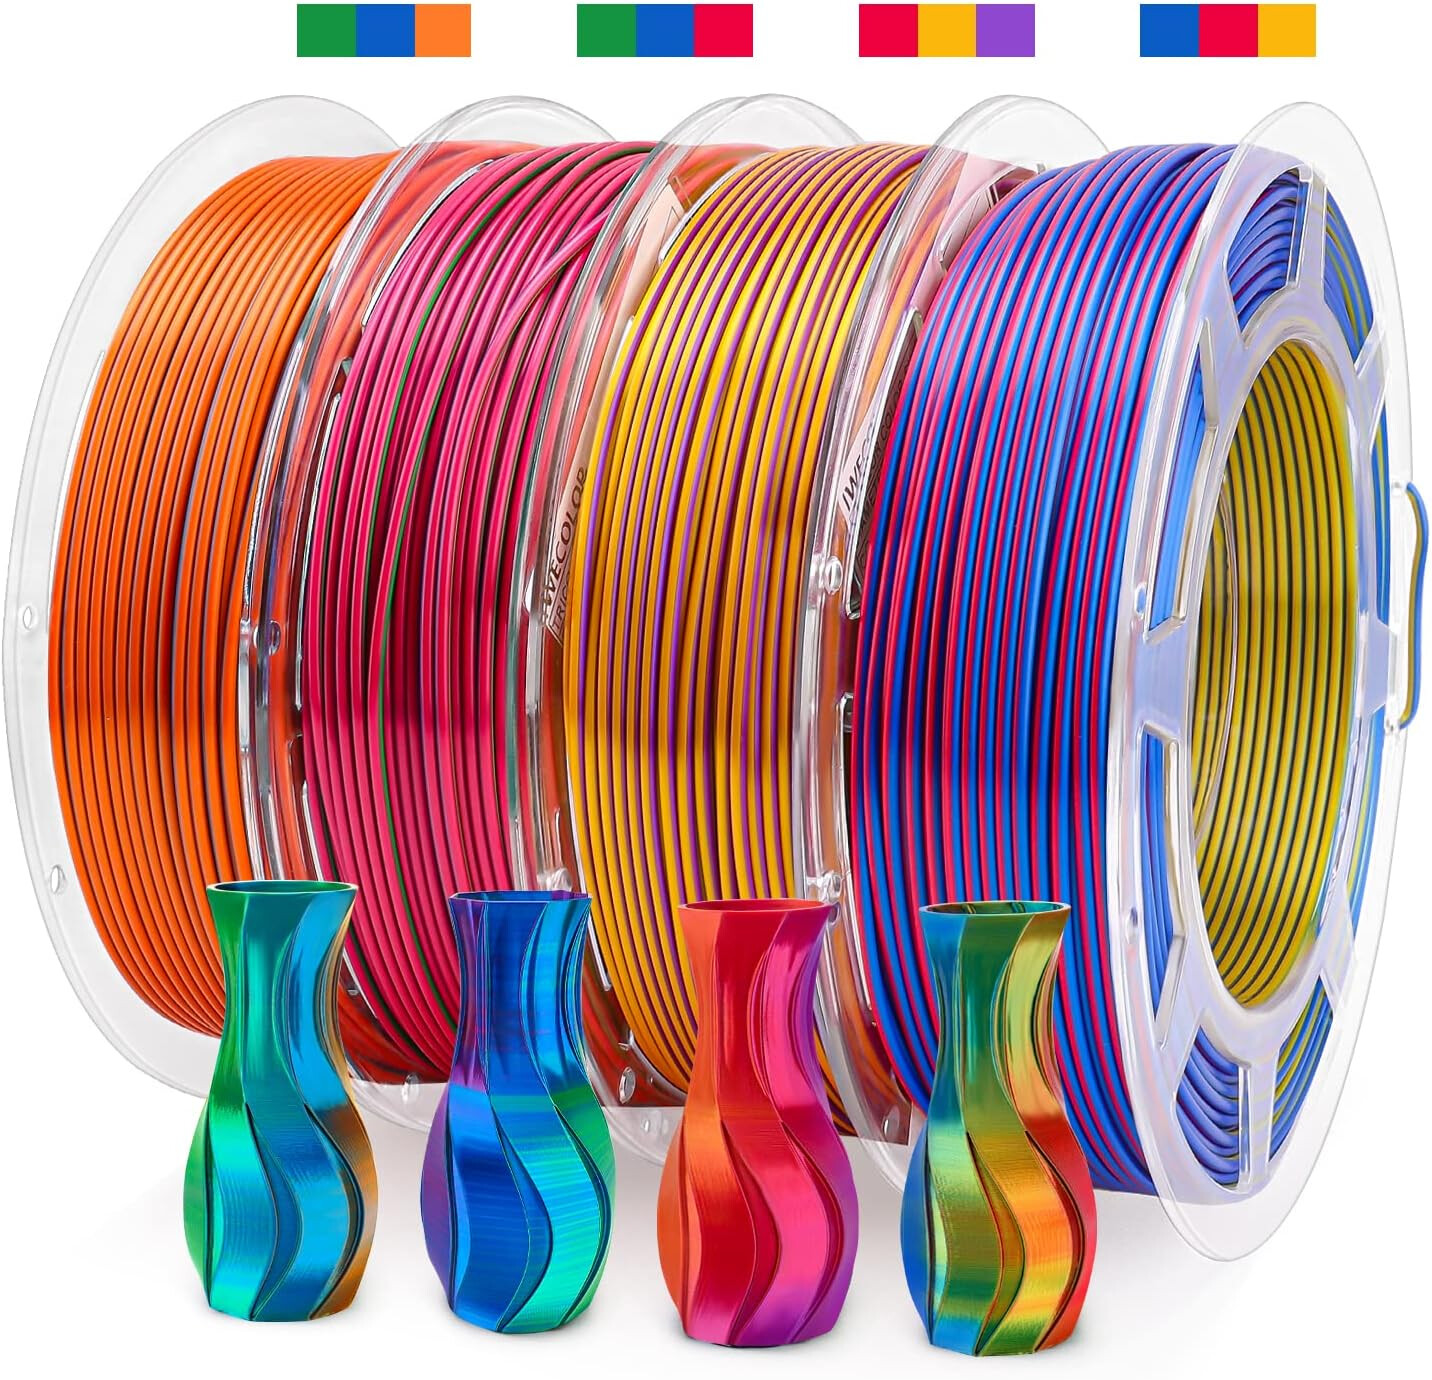 Filament d'imprimante 3D PLA 1.75mm 1Kg tricolore / Or & Vert & Rose